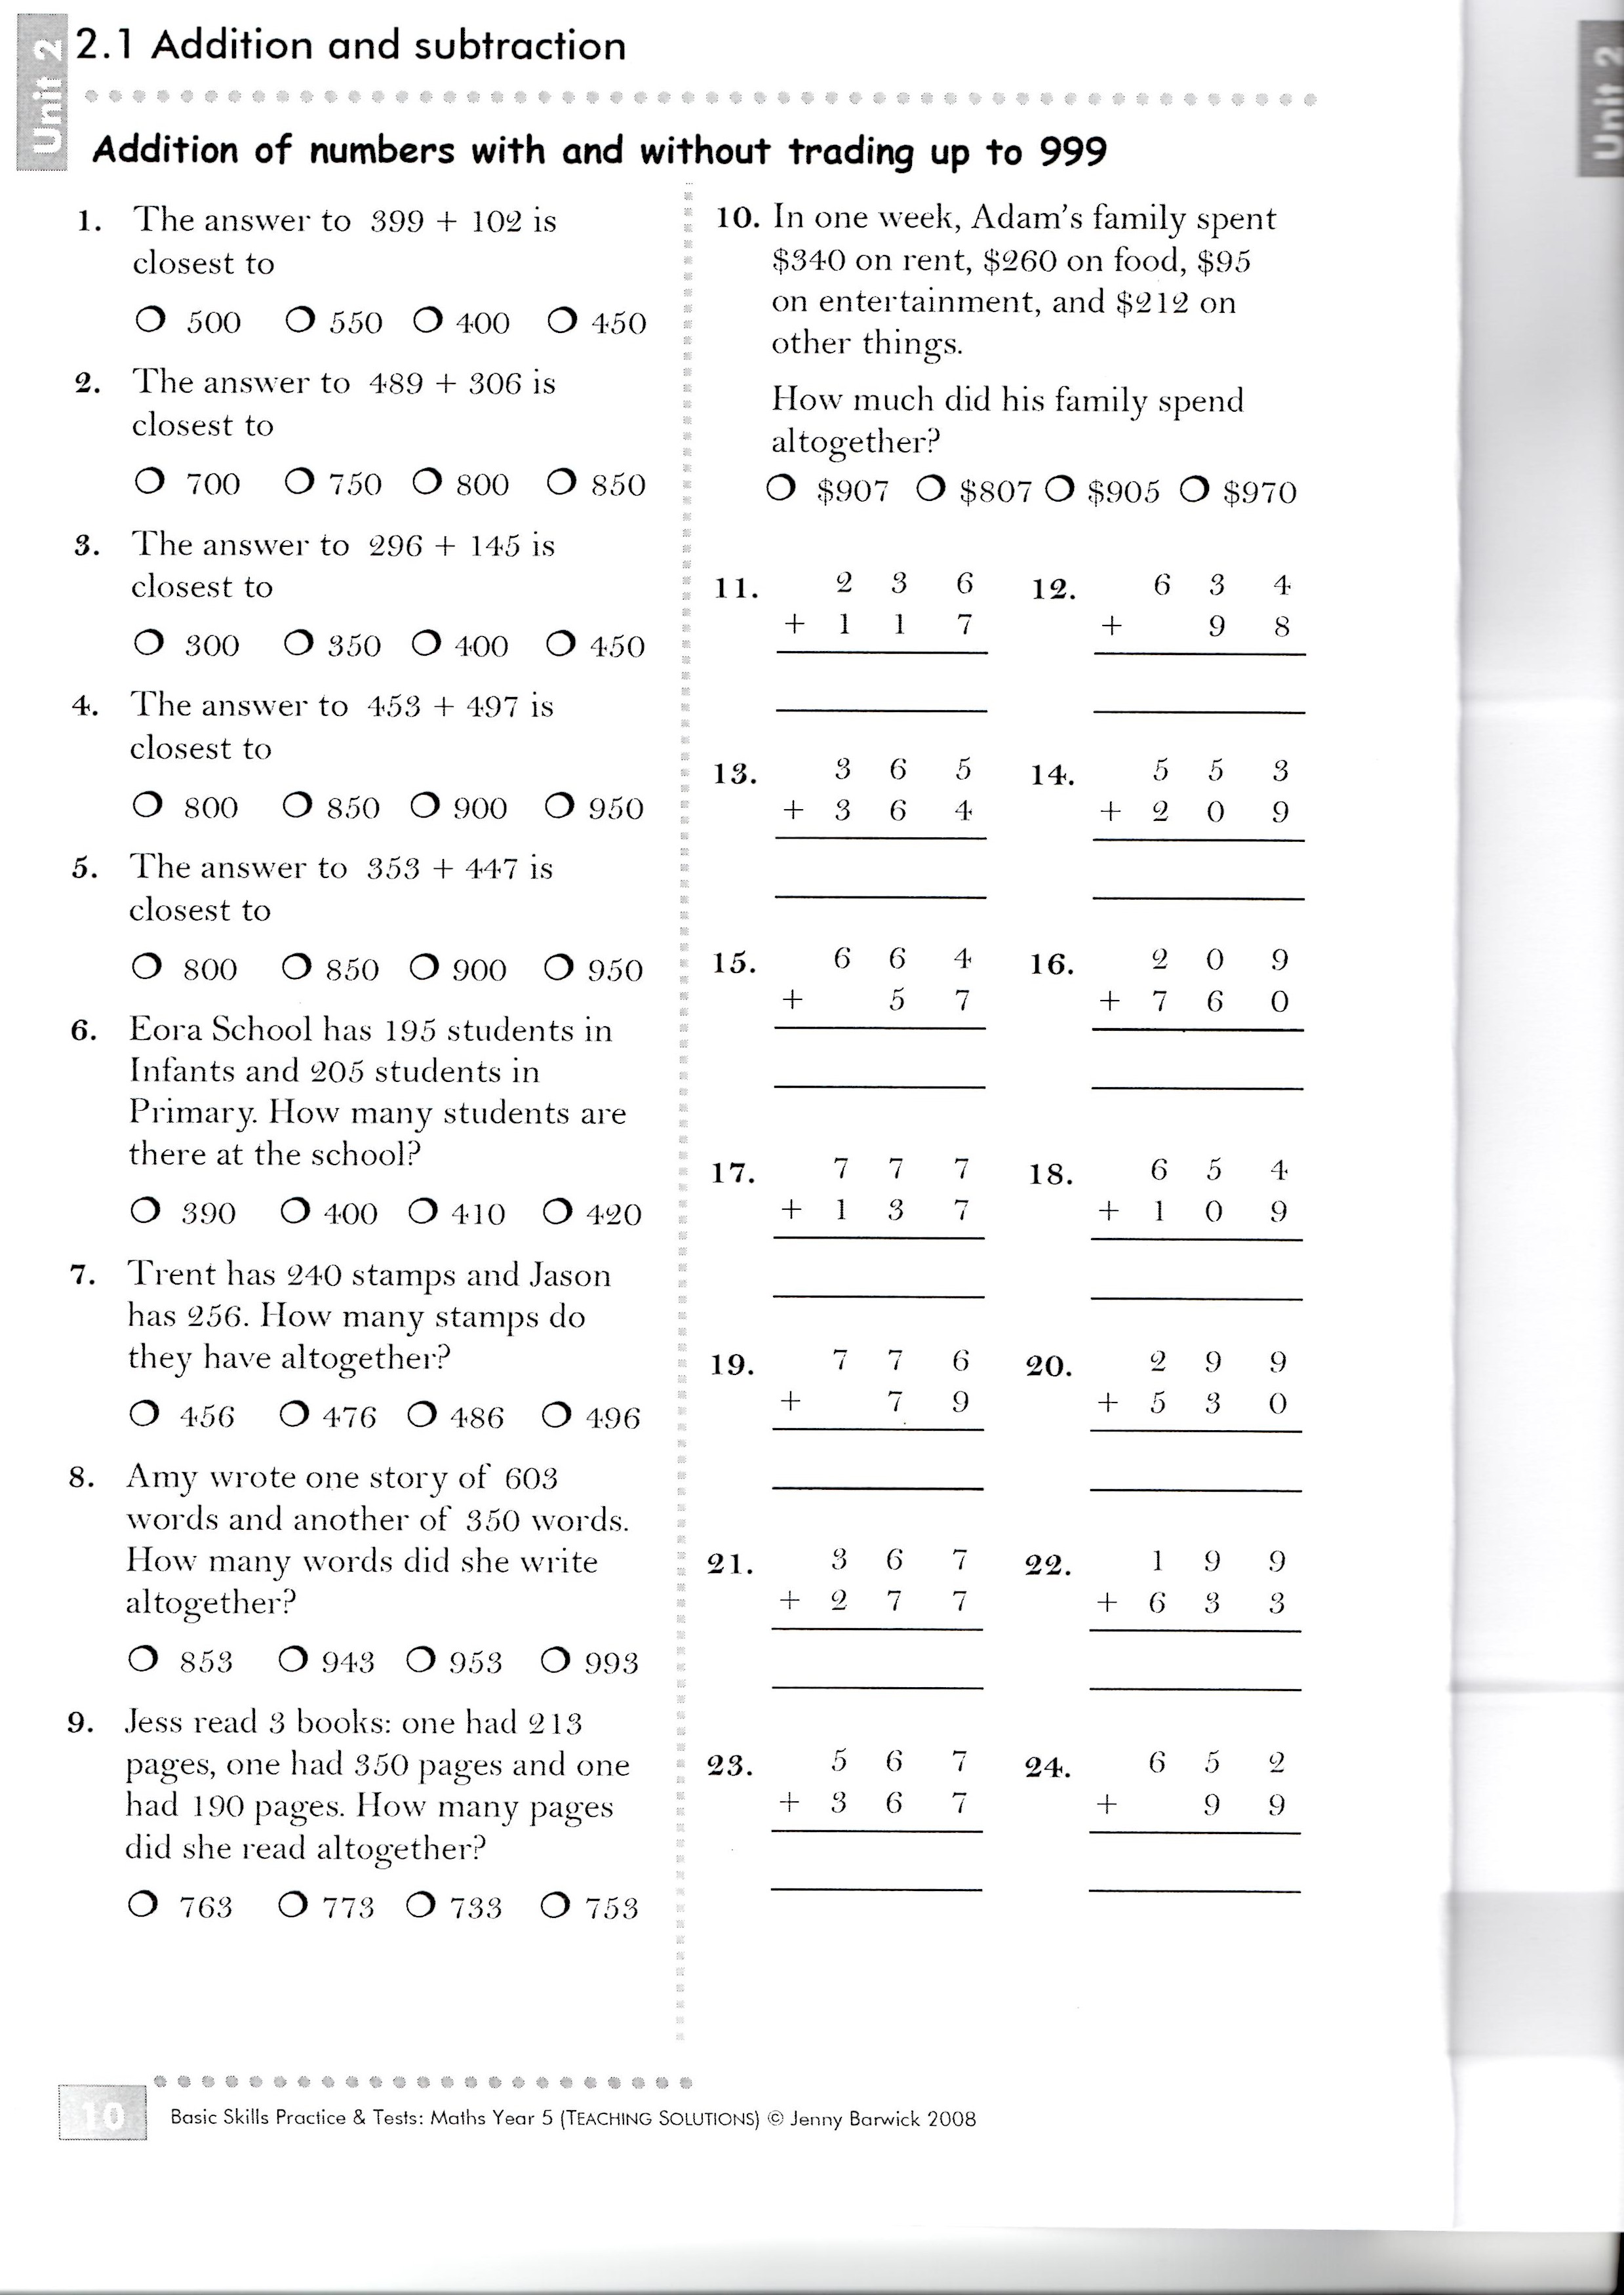 best-basic-math-skills-assessment-printable-harper-blog